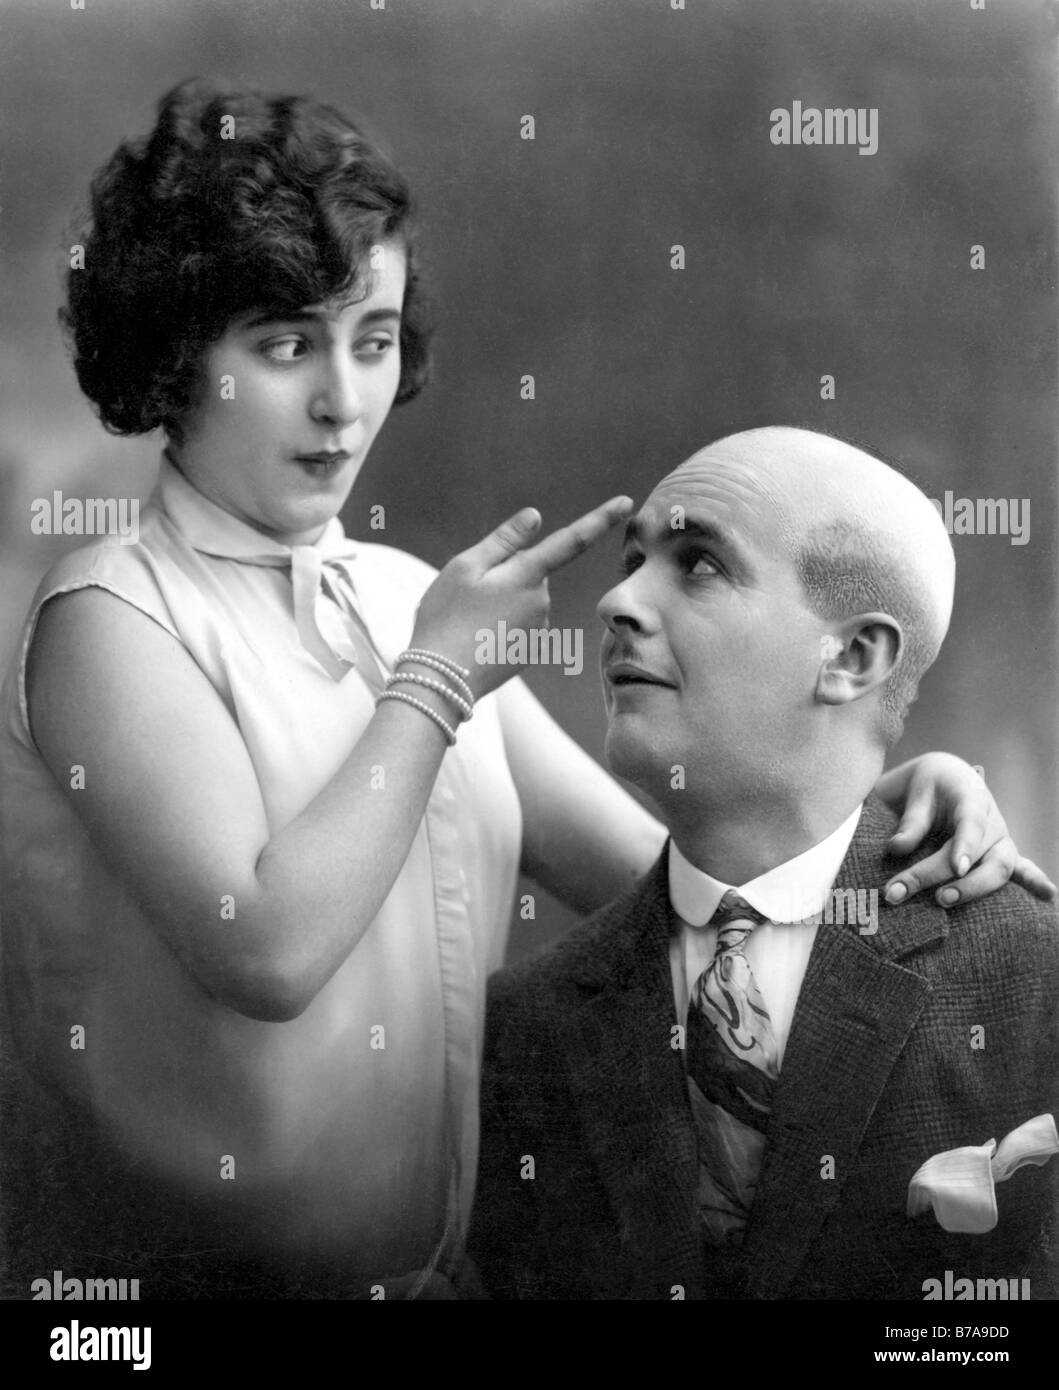 Foto histórica, mujer y hombre calvo, Warum hat Egon keine Haare?, 'por qué no Egon tiene cabello?' ca. 1920 Foto de stock